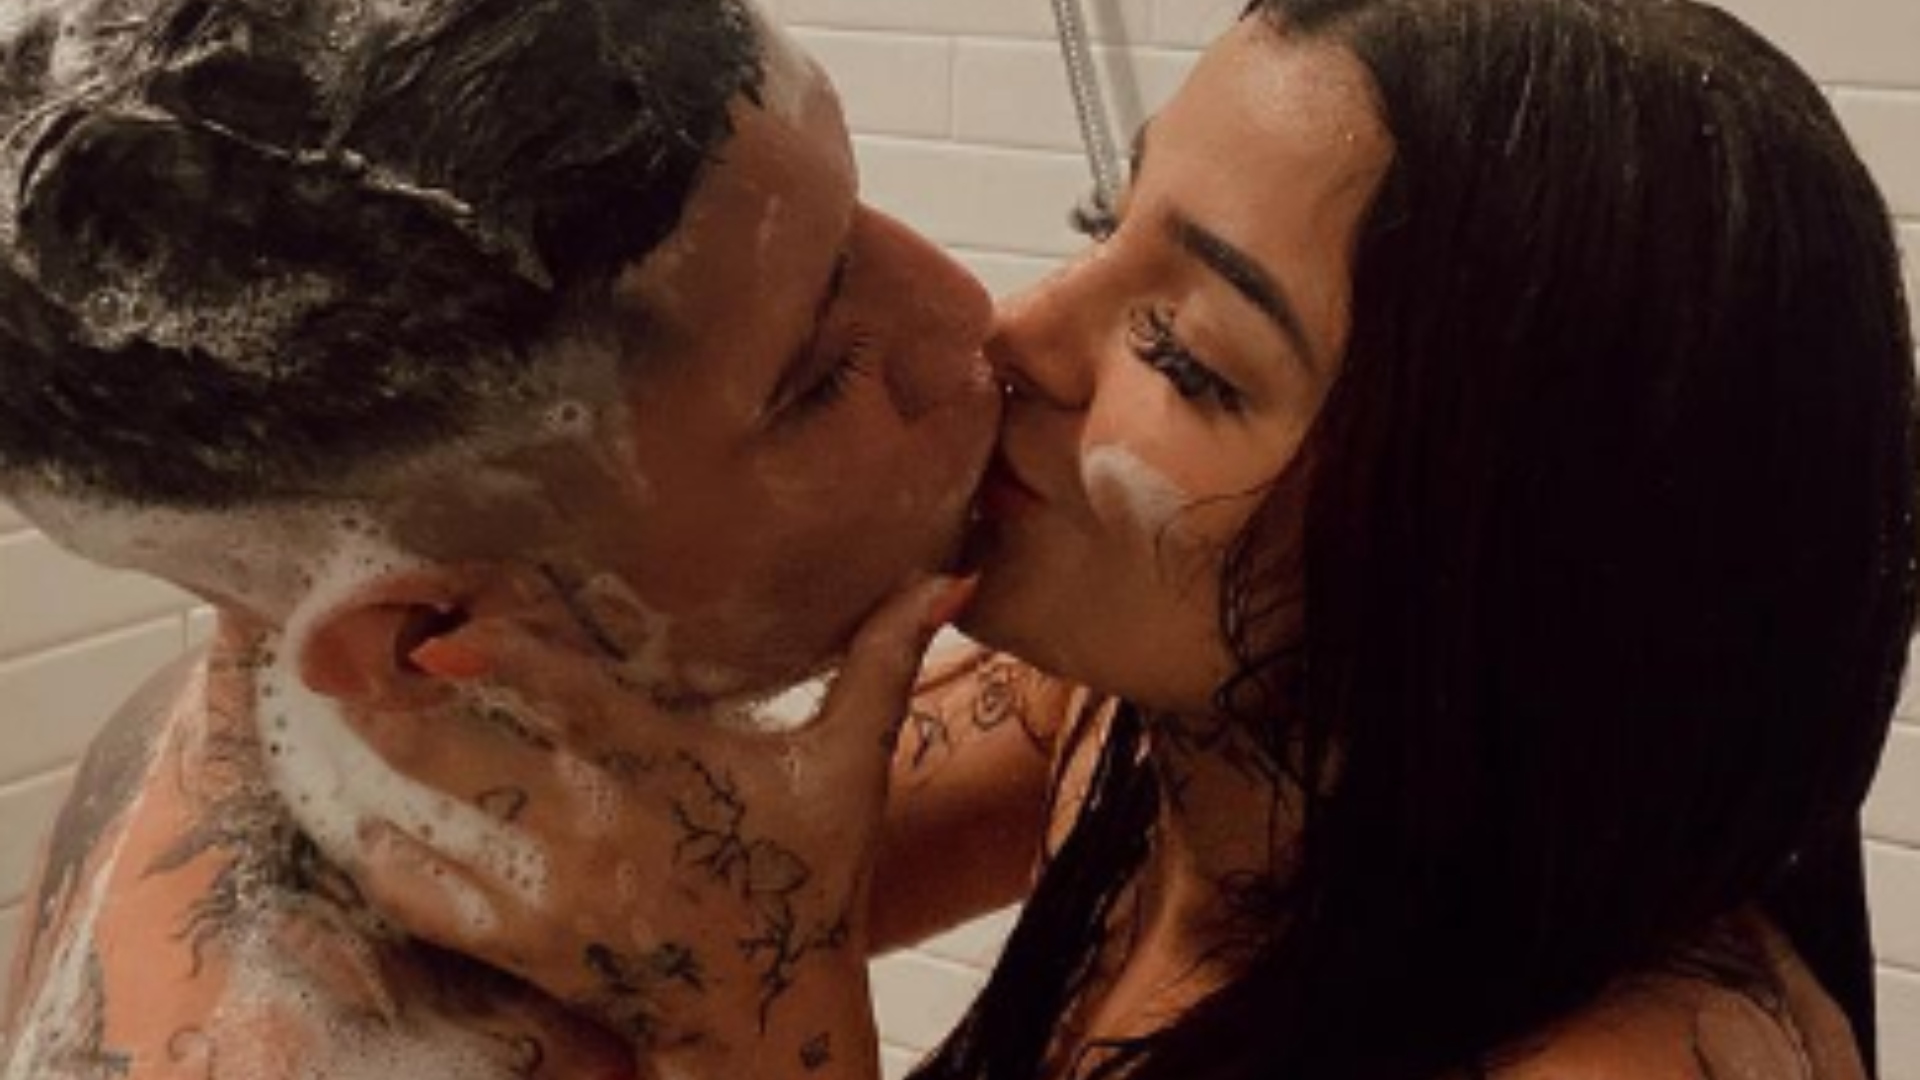 Karely Ruiz y Santa Fe Klan causaron controversia tras mostrar imágenes íntimas en la ducha  